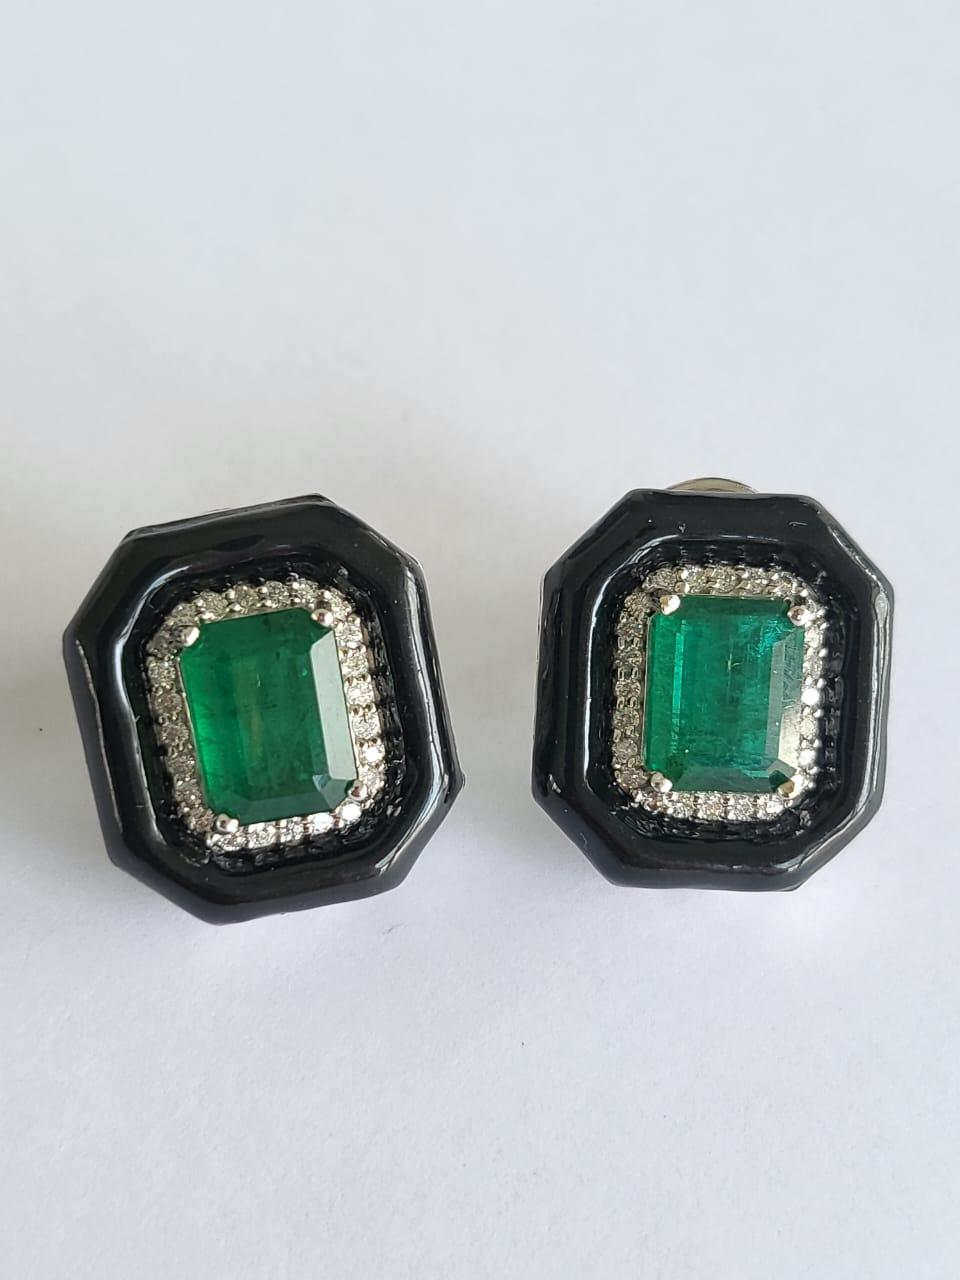 Emerald Cut 5.15 Carats, Natural Zambian Emerald, Diamonds & Black Enamel Stud Earrings